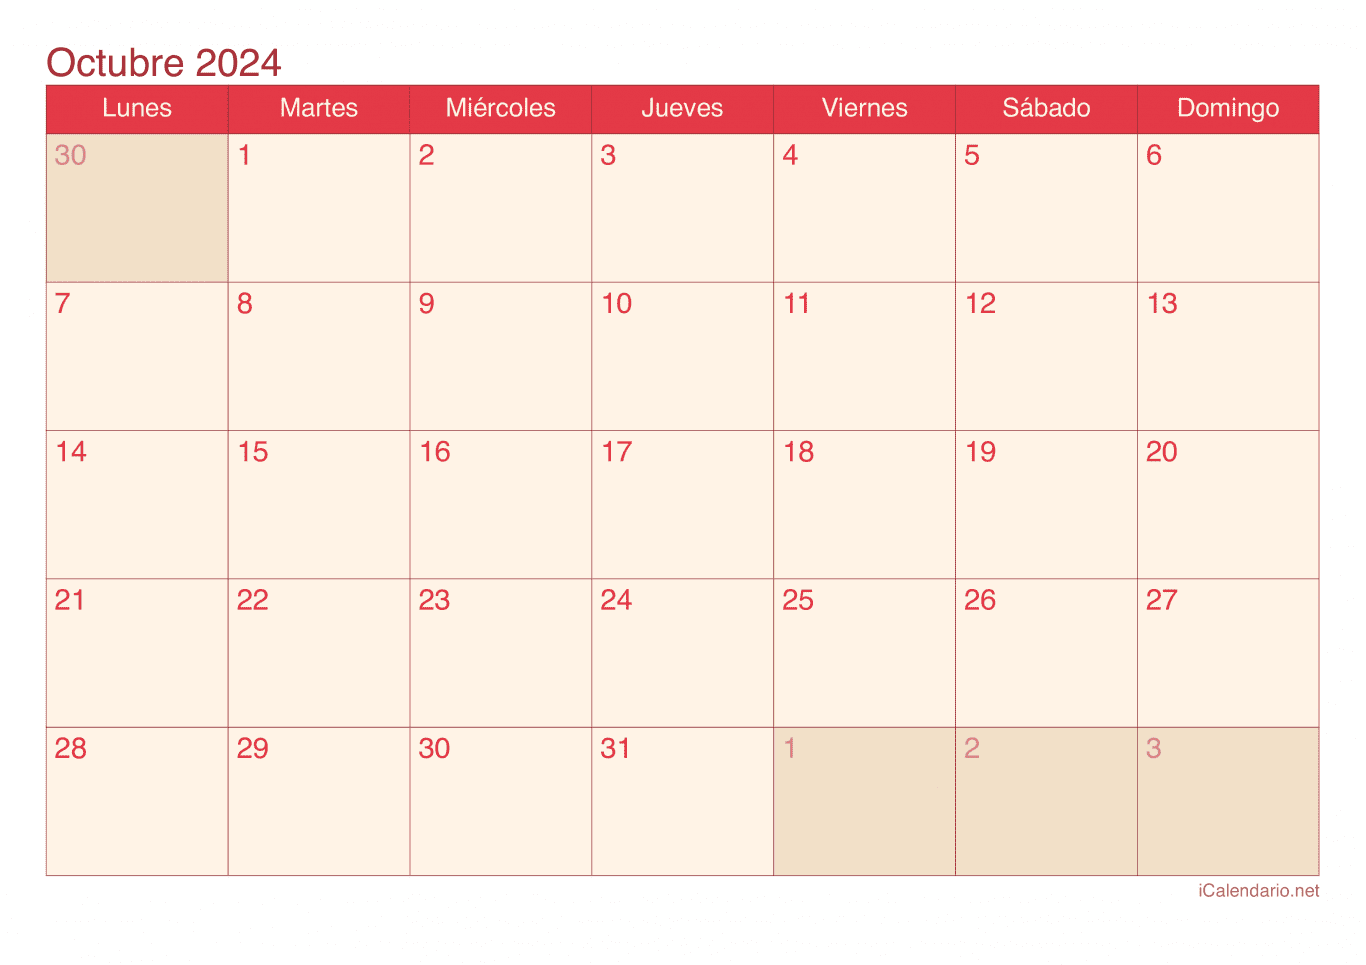 Calendario de octubre 2024 - Cherry